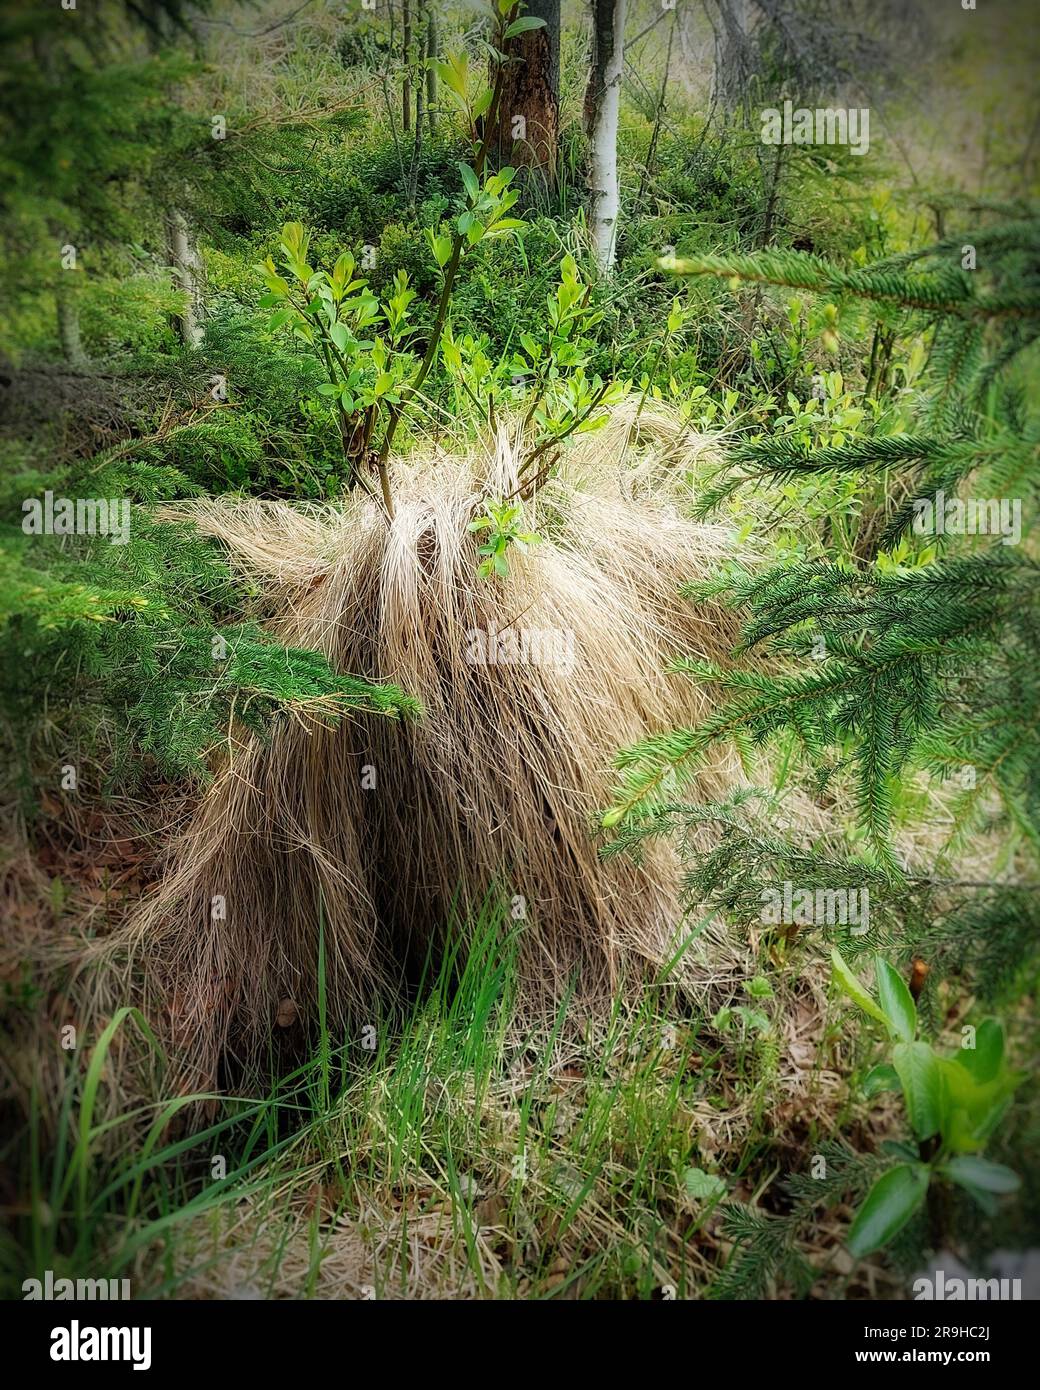 Gras und Weidentölpel in dichter Vegetation sehen aus wie von Haaren bedeckte Kreaturen. Stockfoto